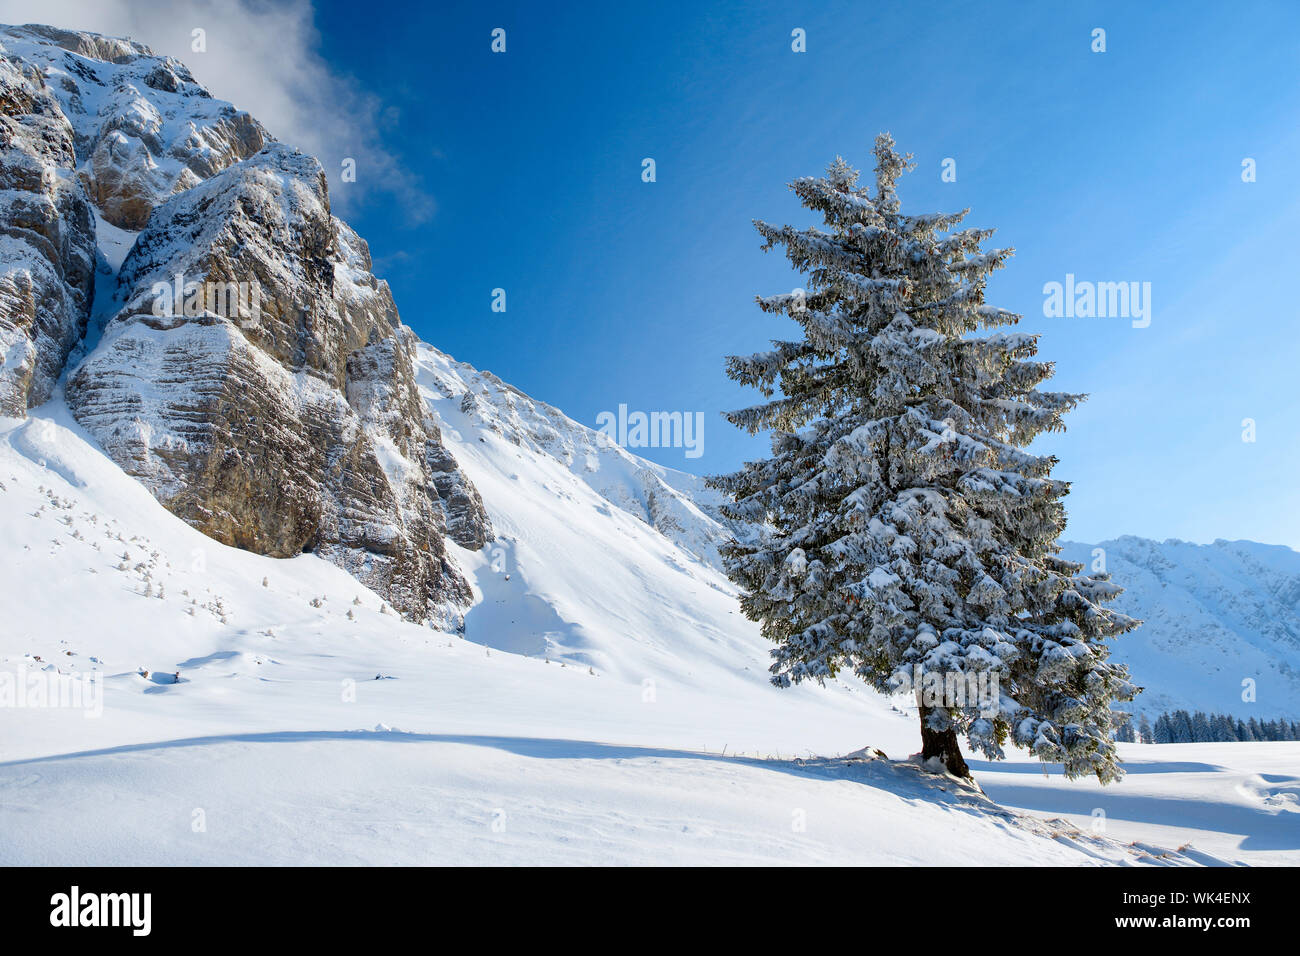 Alpen, Alpstein, Baum, Berge, Fichte, Gebirge, Himmel, Schnee, Schweiz, Schweizer Alpen, Schweizer Berge, Schwägalp, Tanne, Tannen, Tannenbaum, Winter Stock Photo